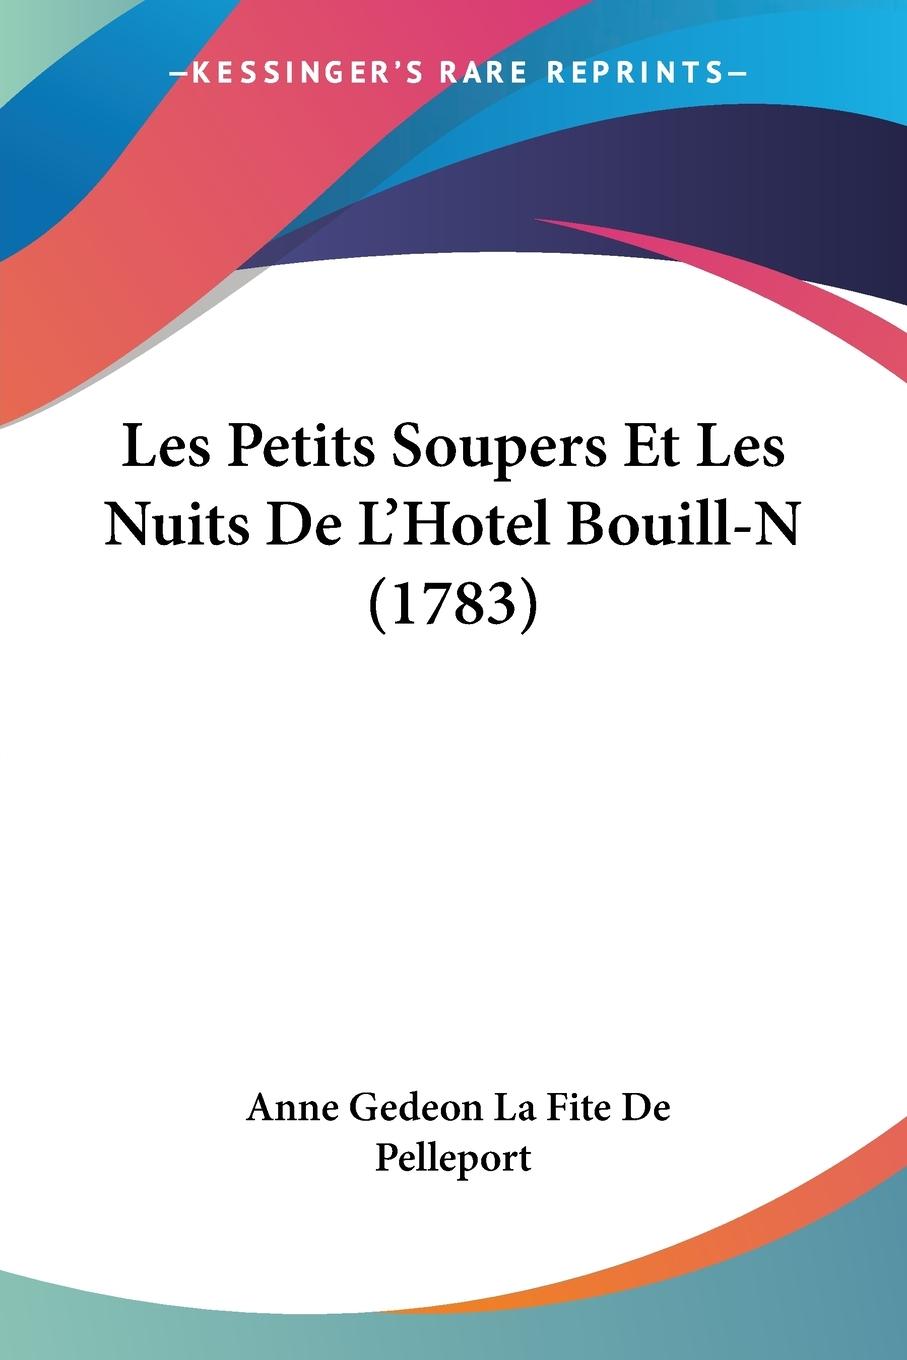 Les Petits Soupers Et Les Nuits De L Hotel Bouill-N (1783) - Pelleport, Anne Gedeon La Fite De